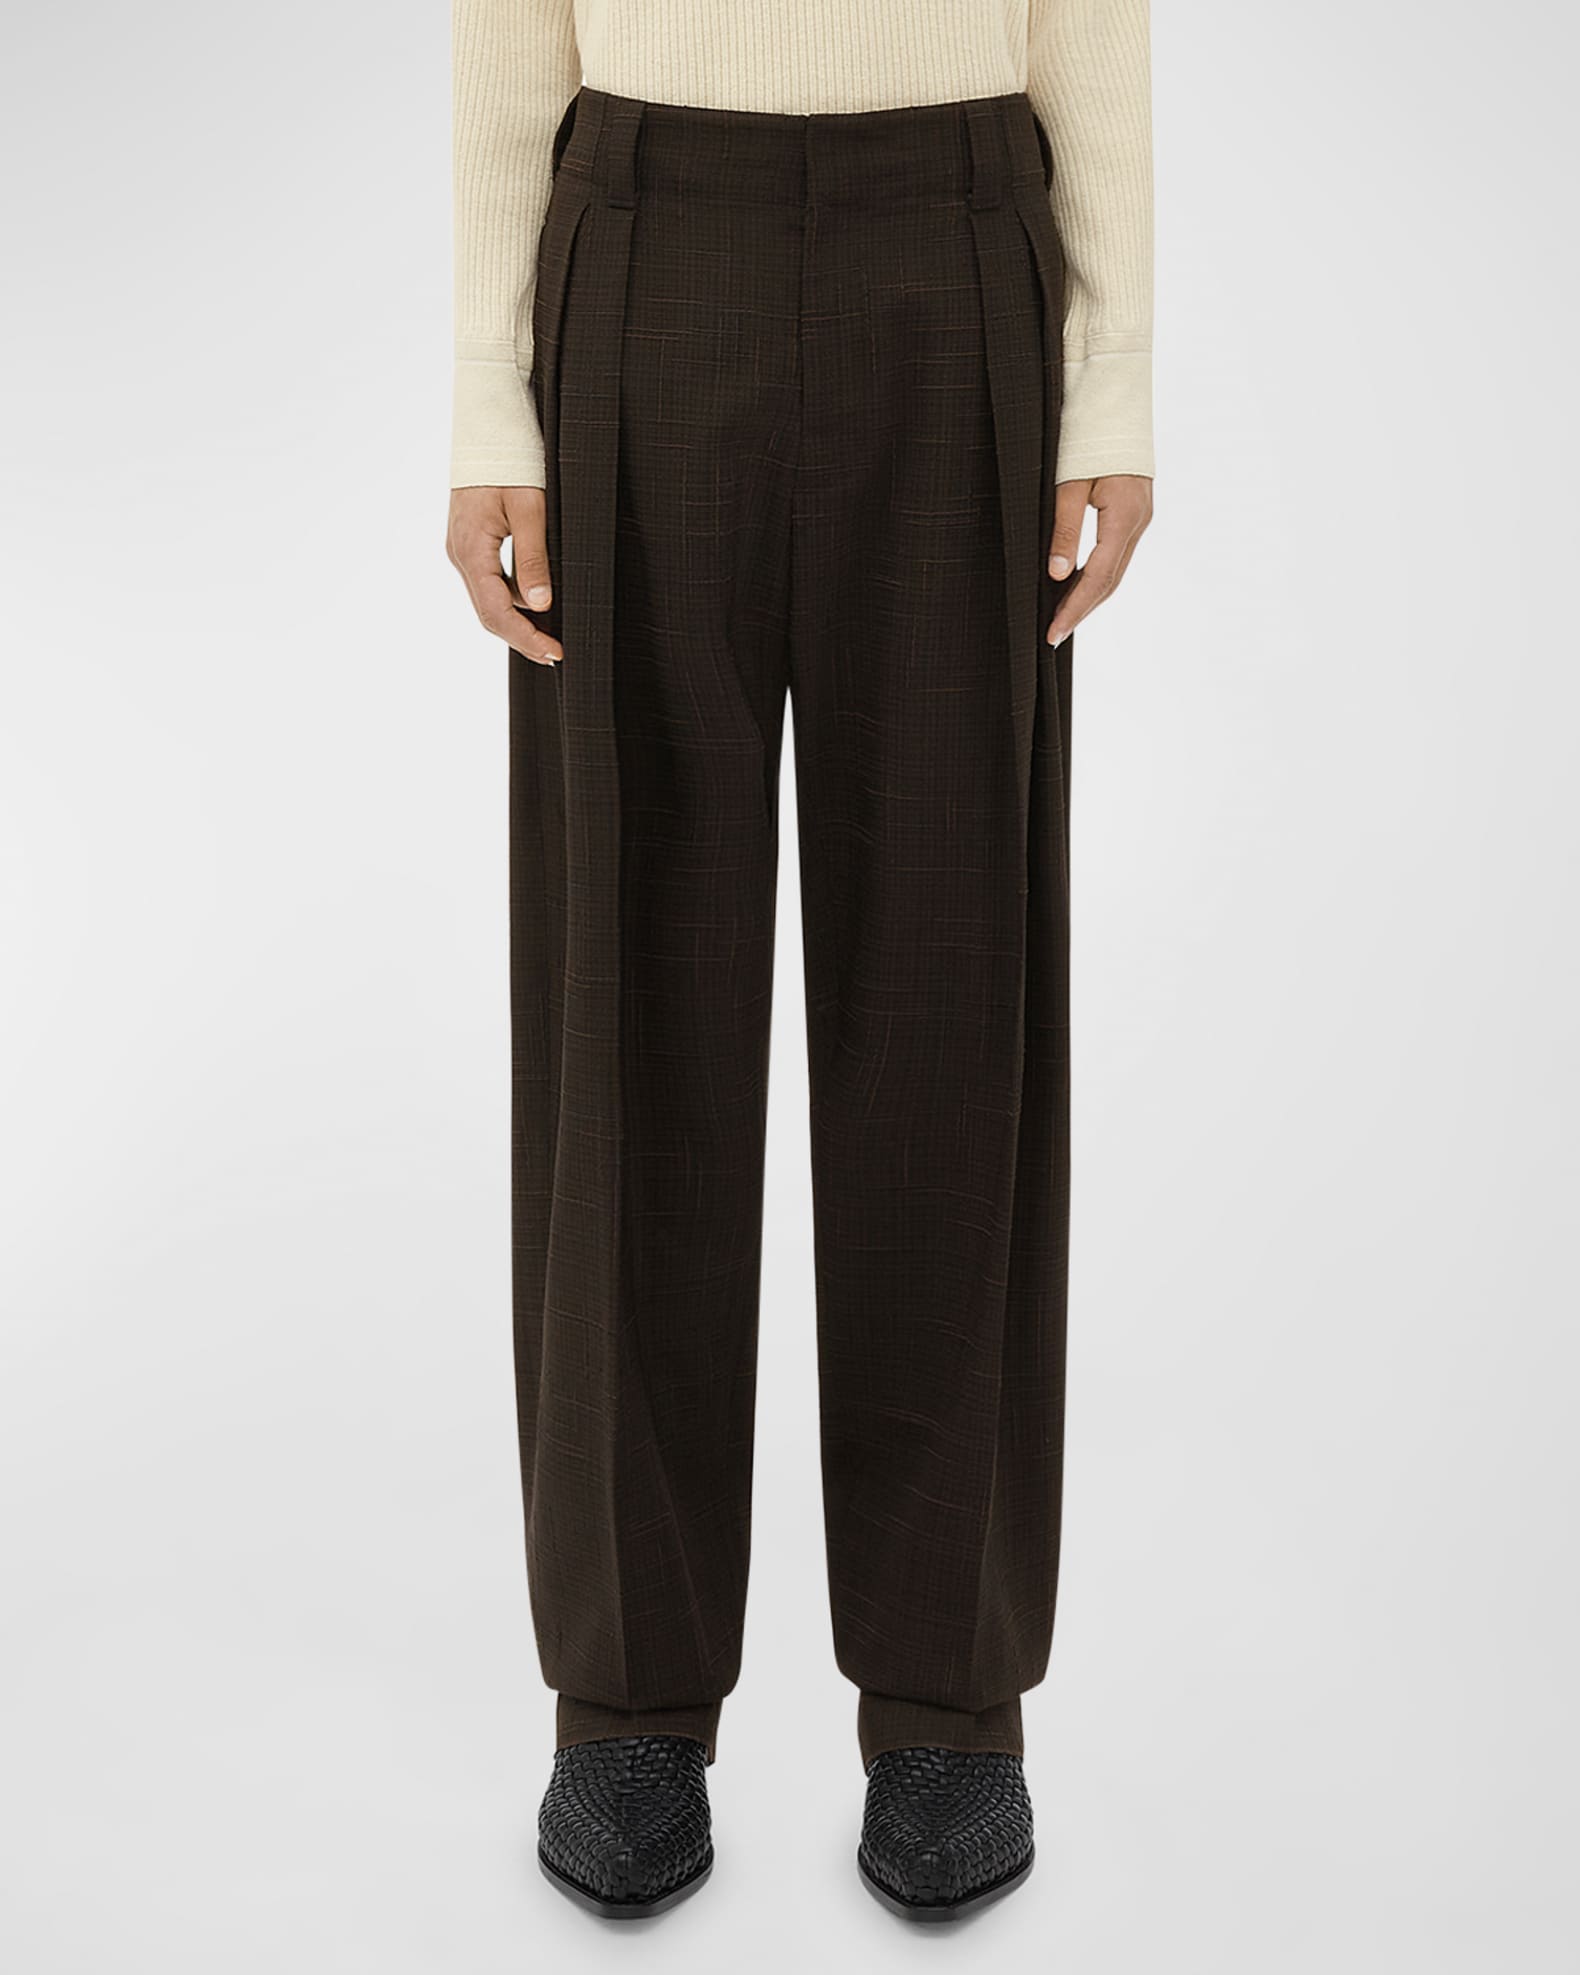 Bottega Veneta Men's Textured Double-Pleated Trousers | Neiman Marcus